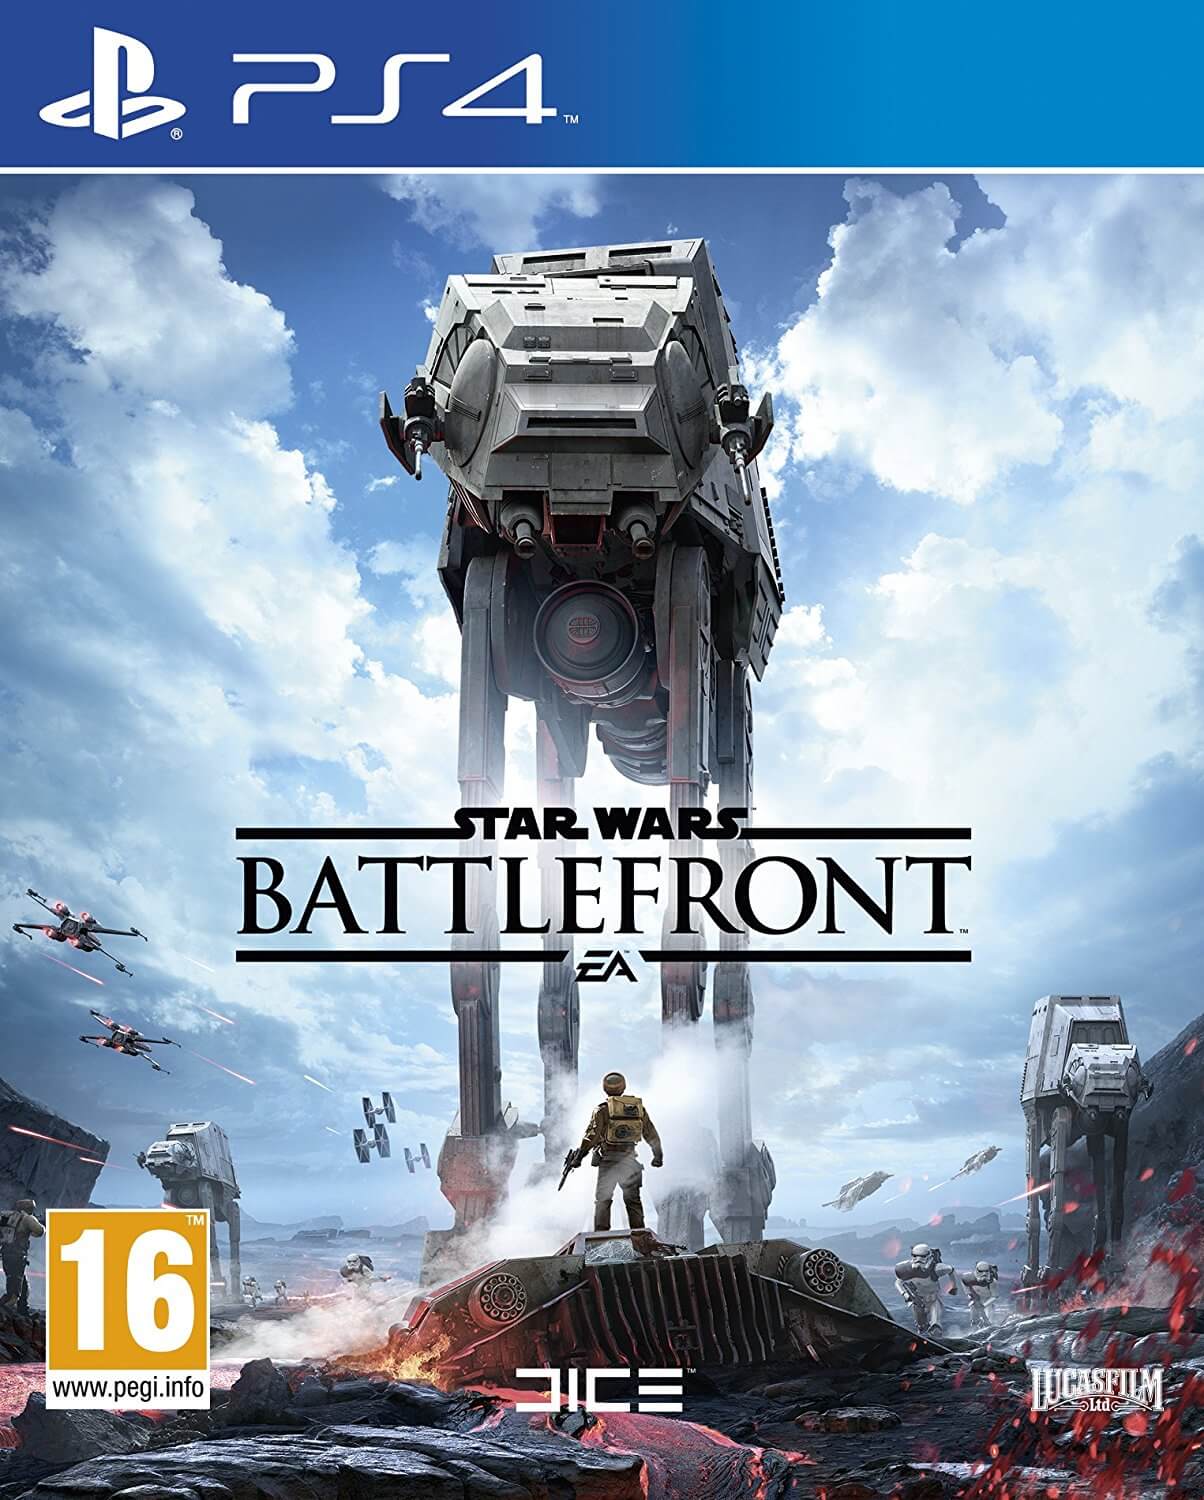 Star Wars Battlefront - Playstation 4 Games